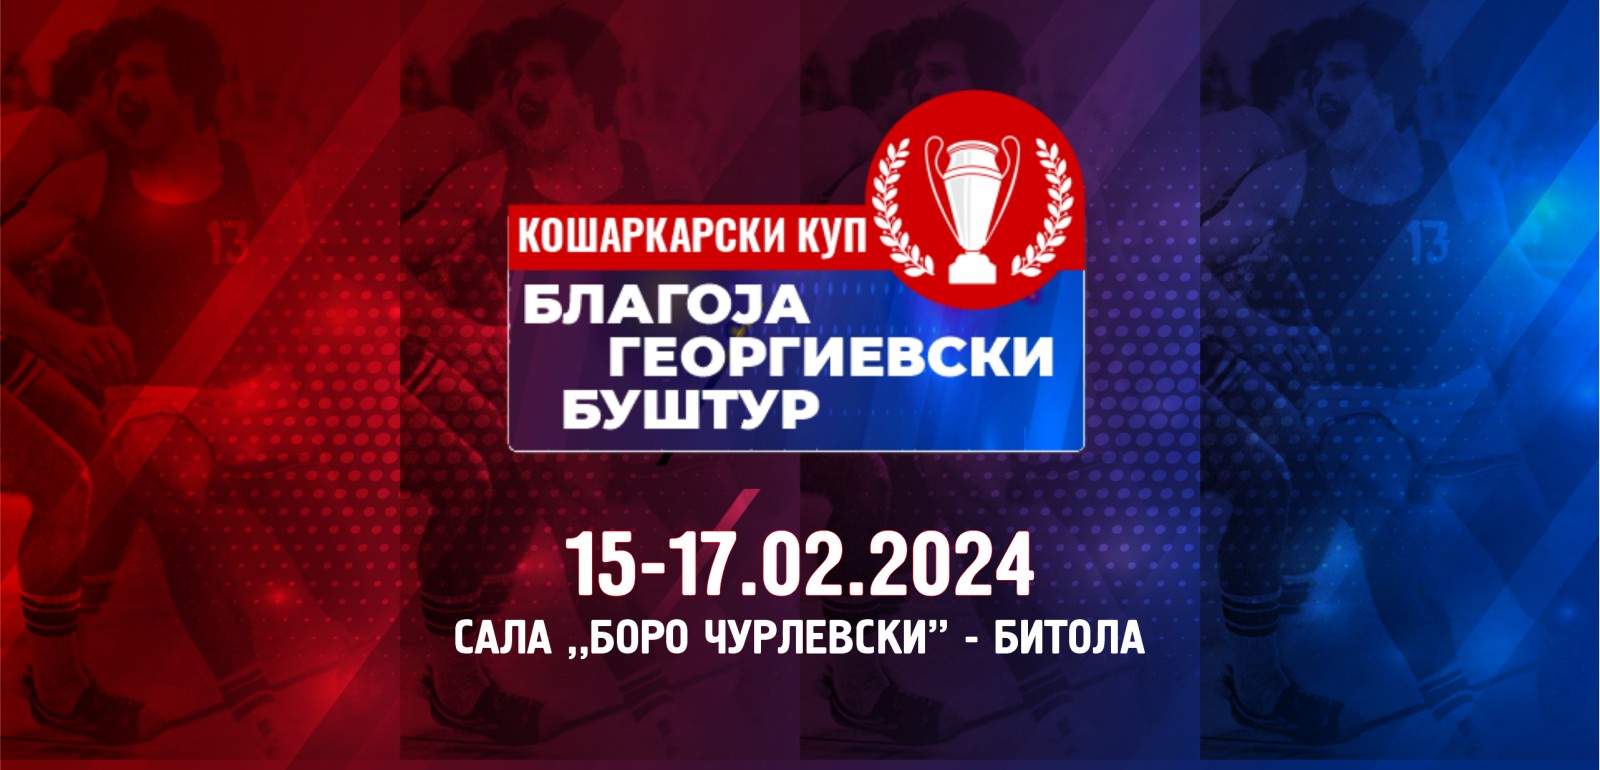 Одредени се распоредот и сатнините за финалниот турнир од Купот „Благоја Георгиевски-Буштур“ 2024